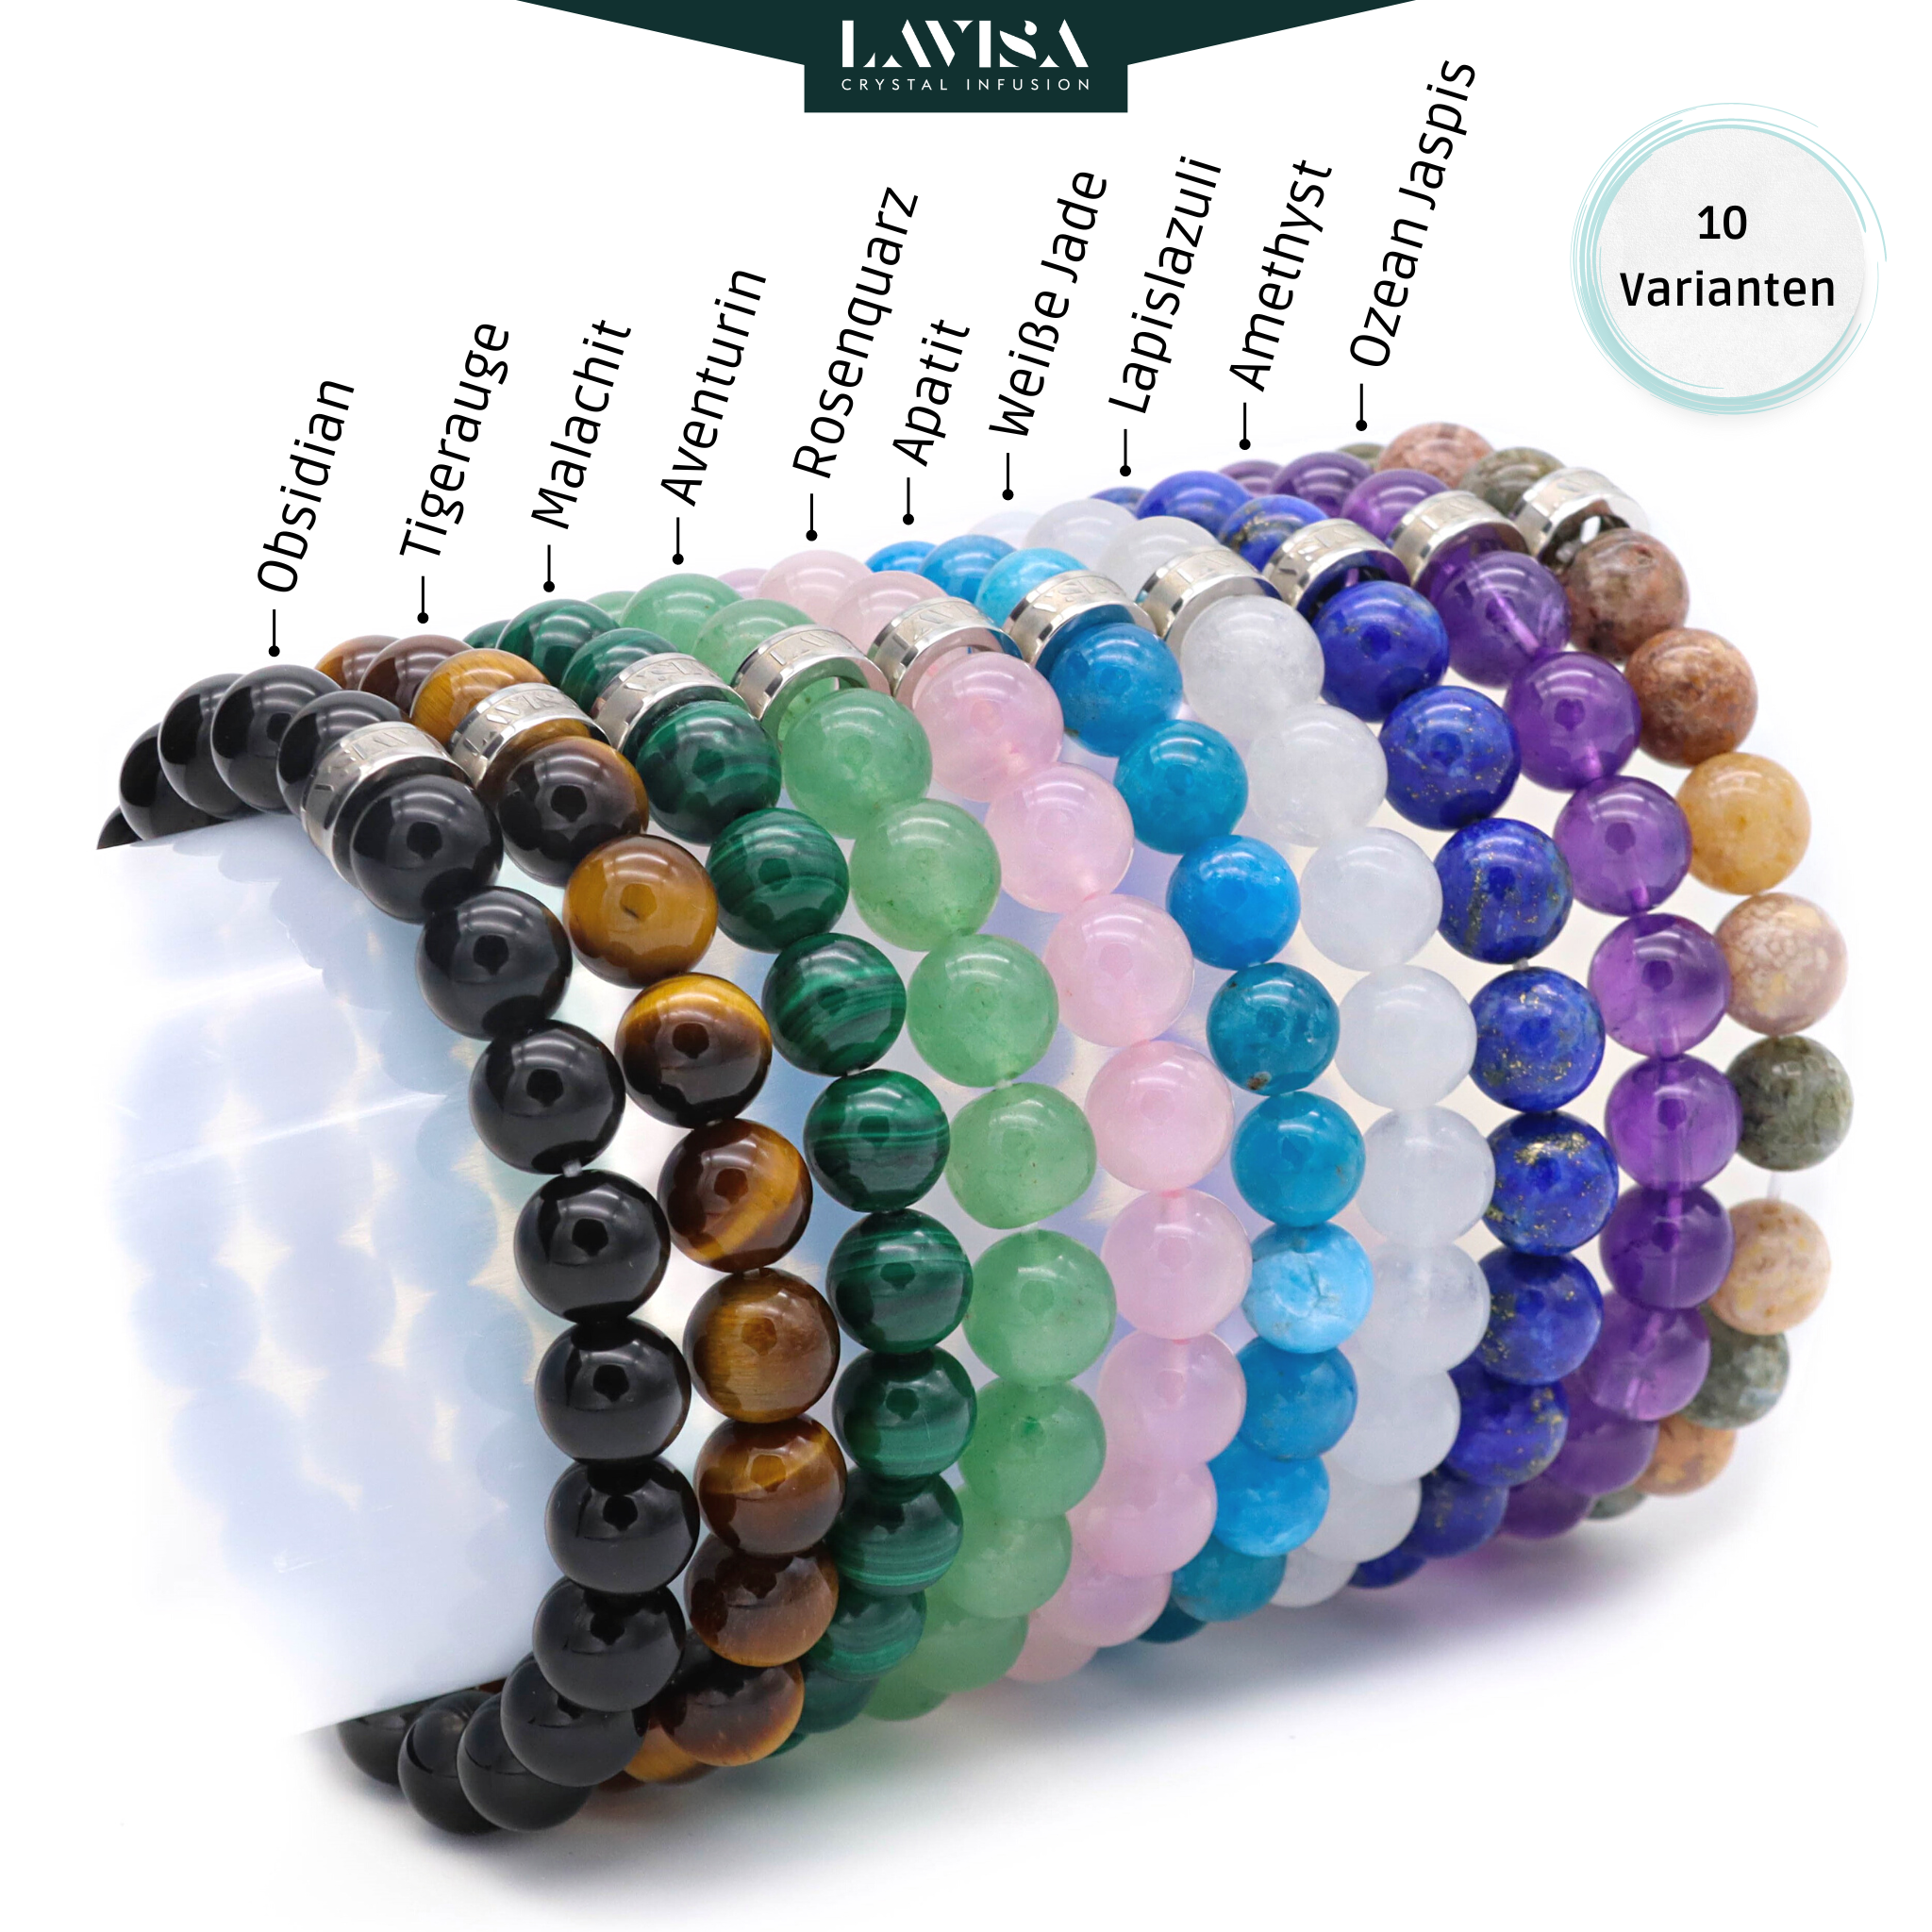  Edelstein Armbänder lavisa 10 Varianten 8mm Perlnen